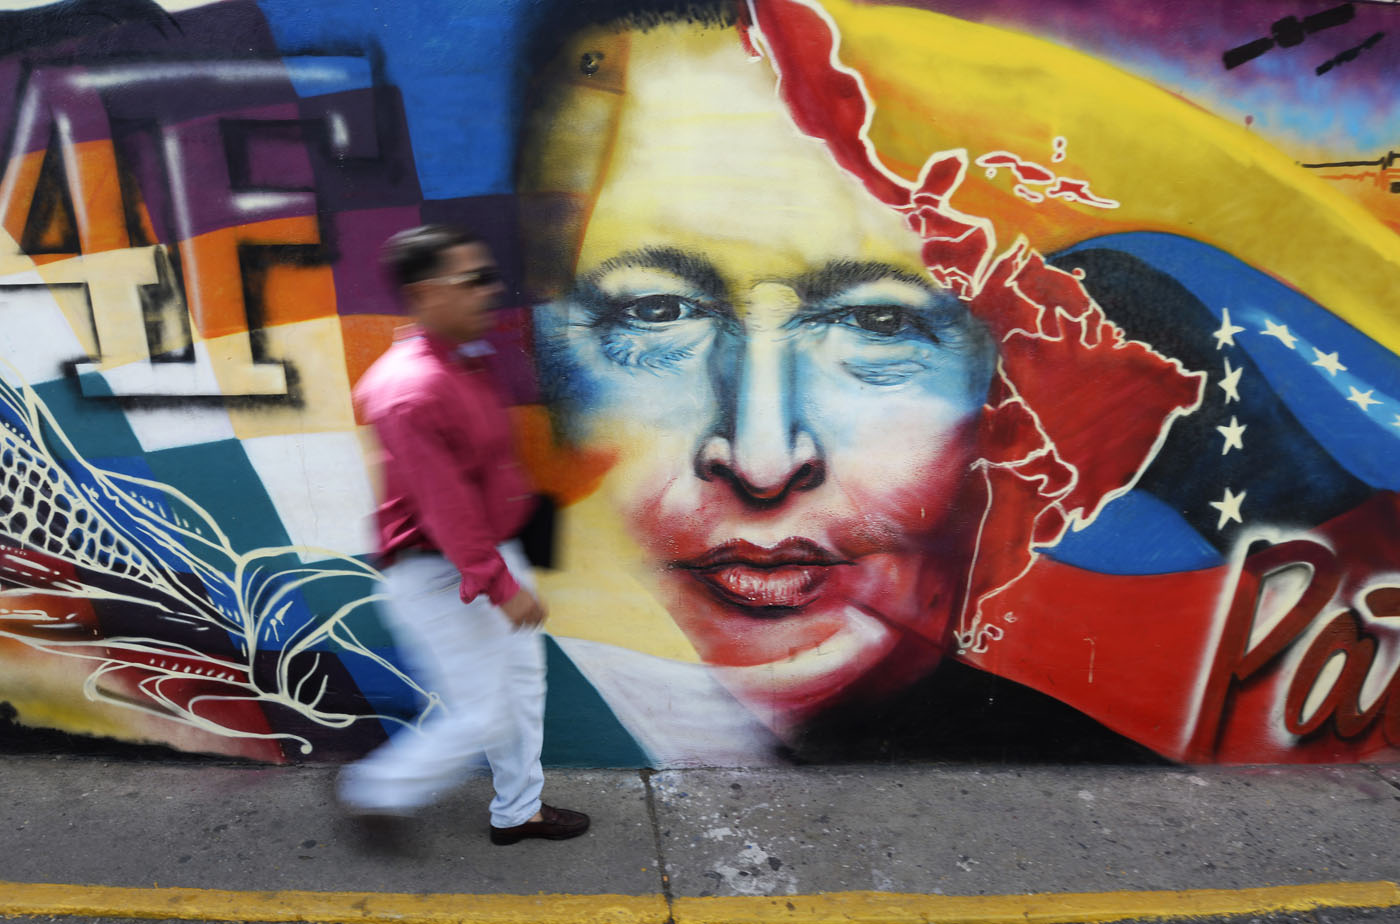 El oficialismo recuerda a Chávez a cinco meses de su muerte